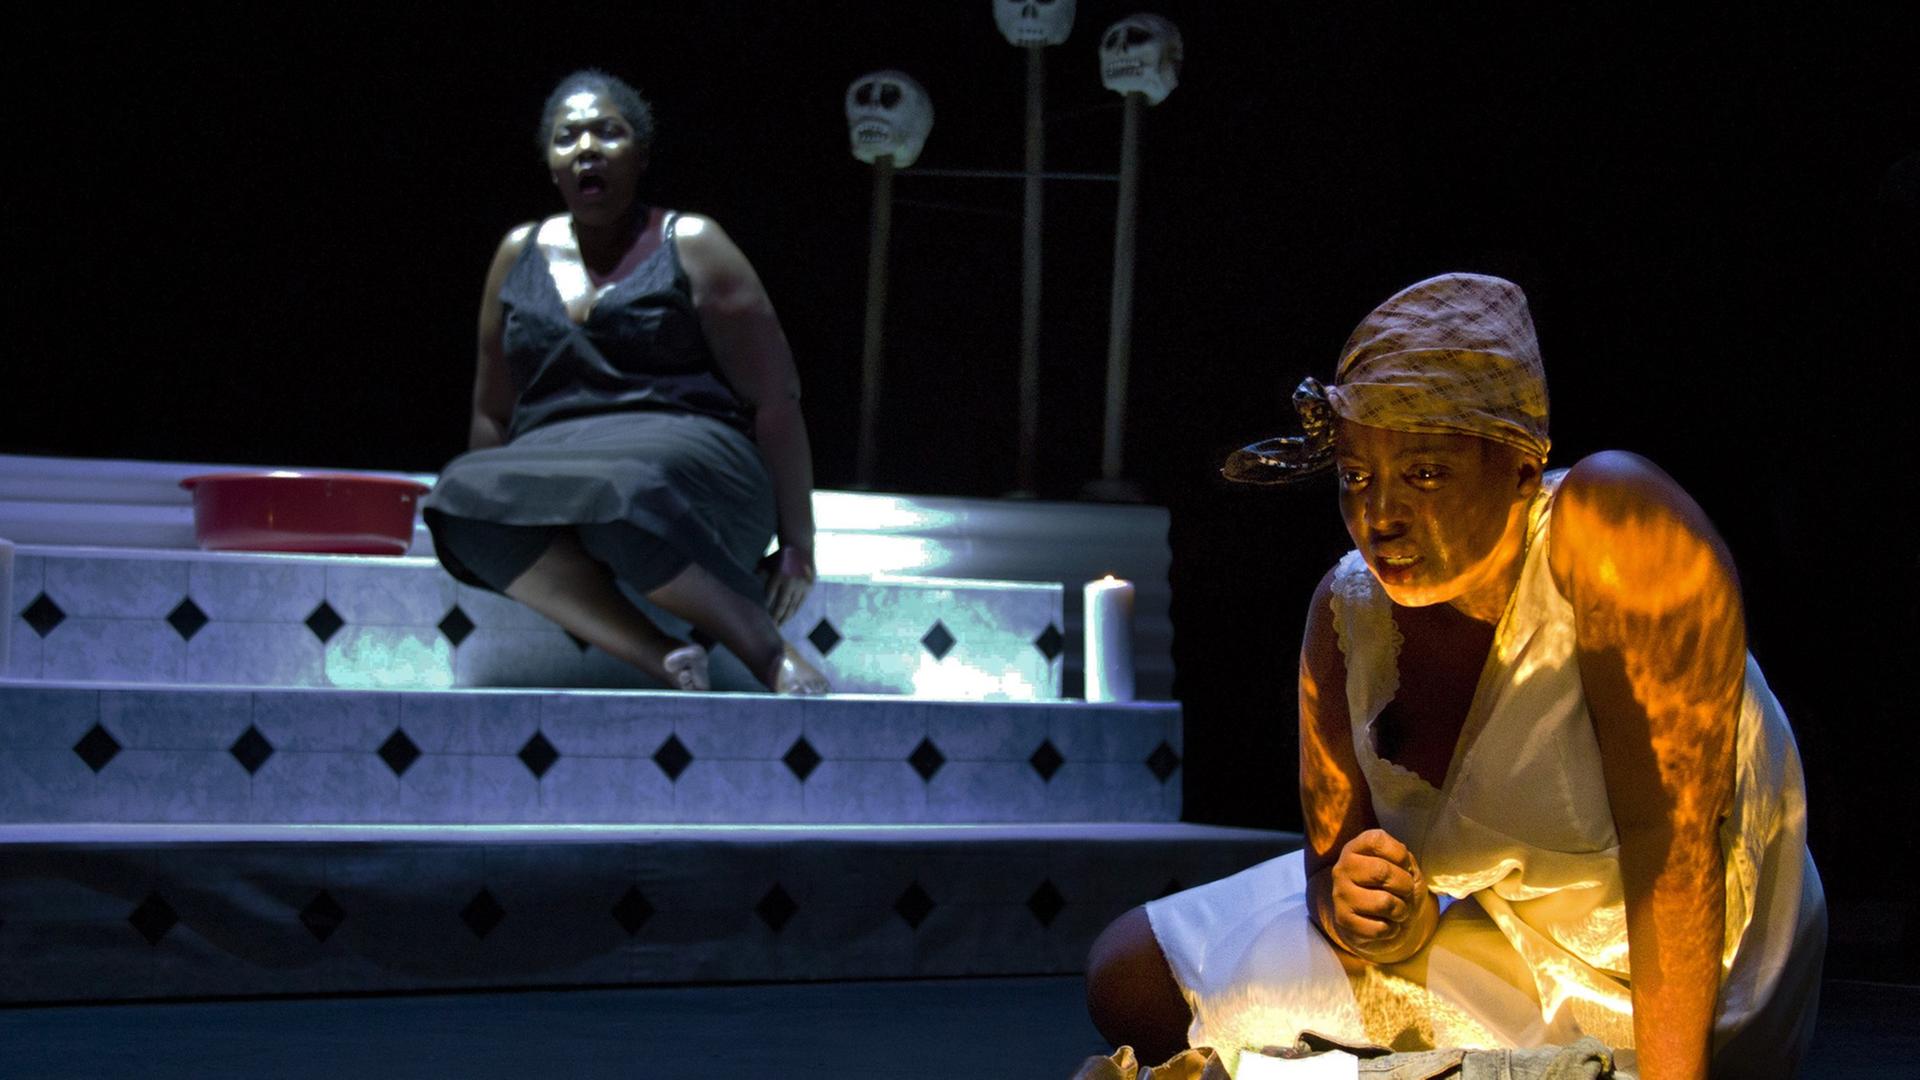 Nobulumko Mngxekeza als Lady Macbeth und Philisa Sibeko (l) spielen während einer Fotoprobe für eine afrikanische Version von Macbeth, die im Rahmen des Festivals Theaterformen in Braunschweig (Niedersachsen) zu sehen ist.